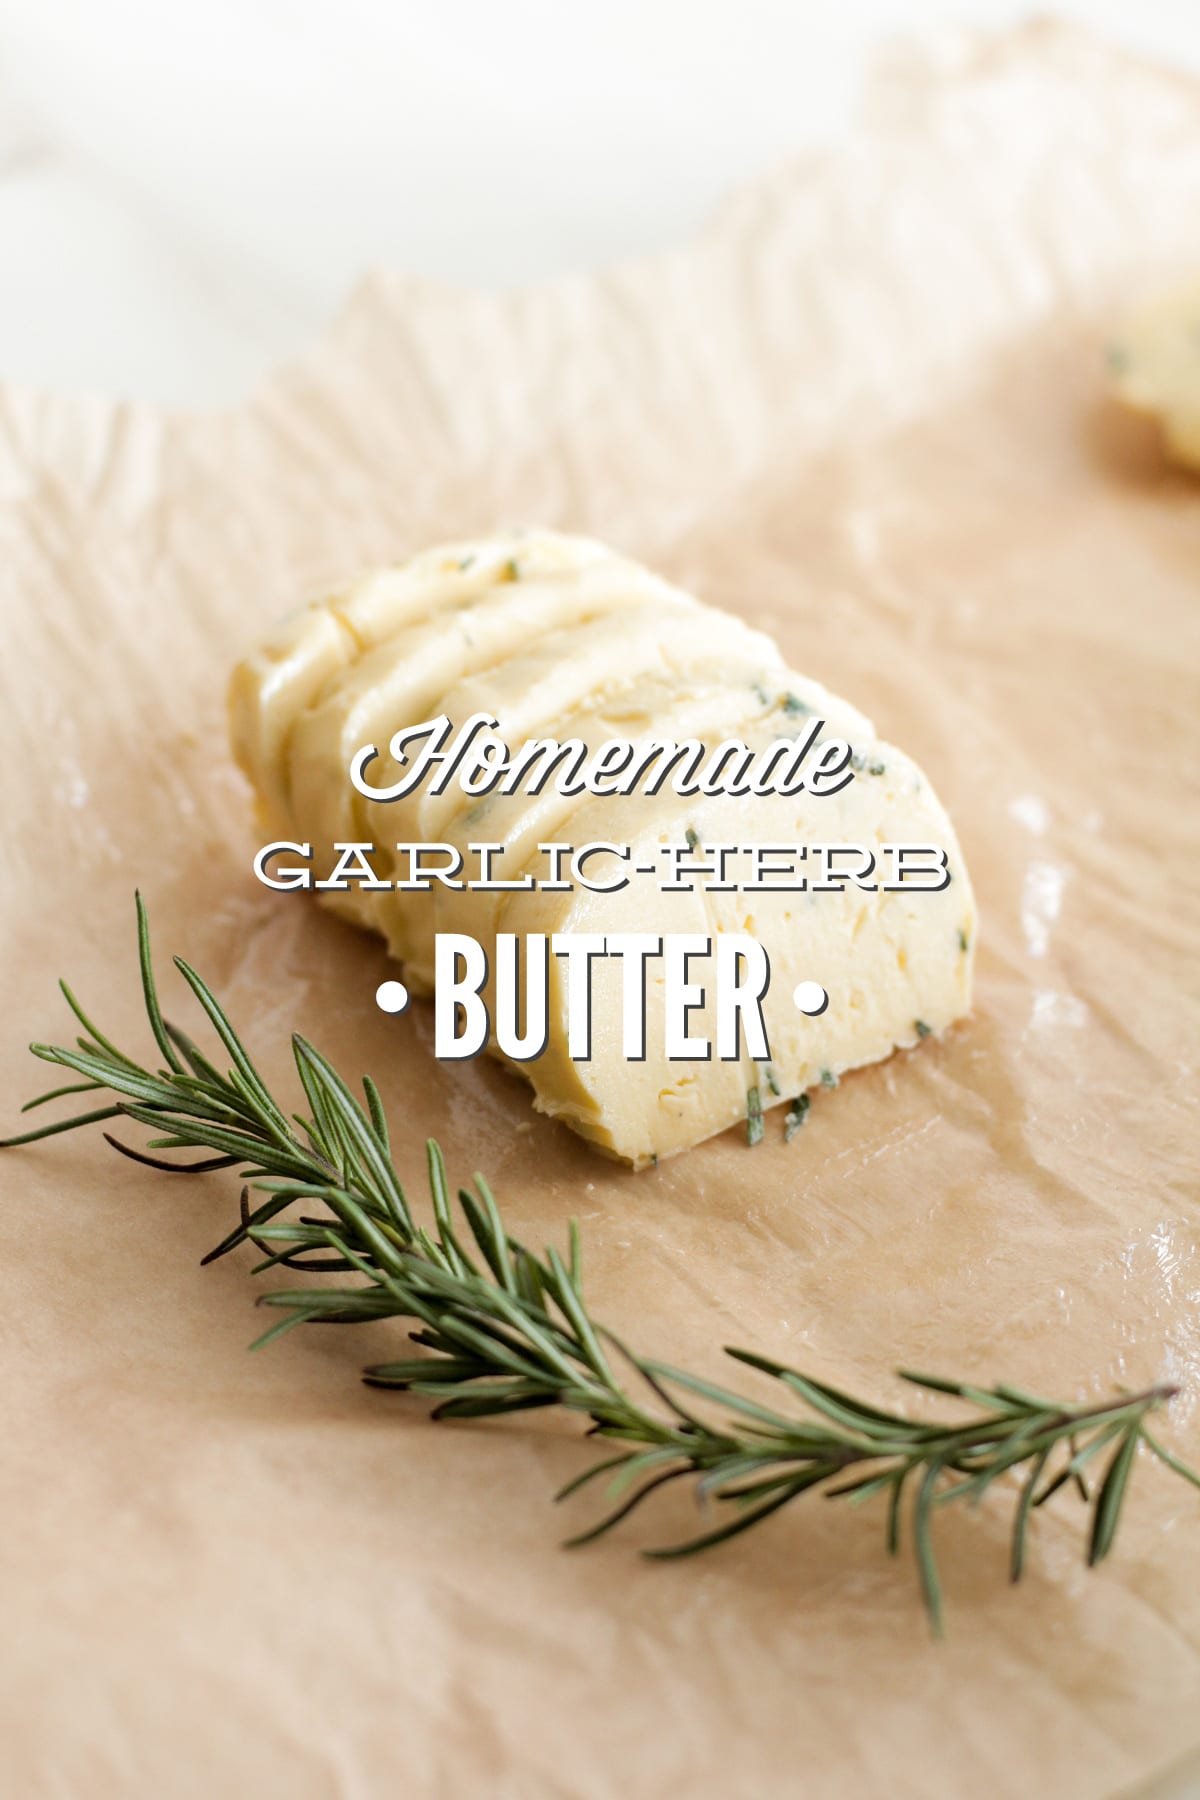 Homemade Garlic-Herb Butter